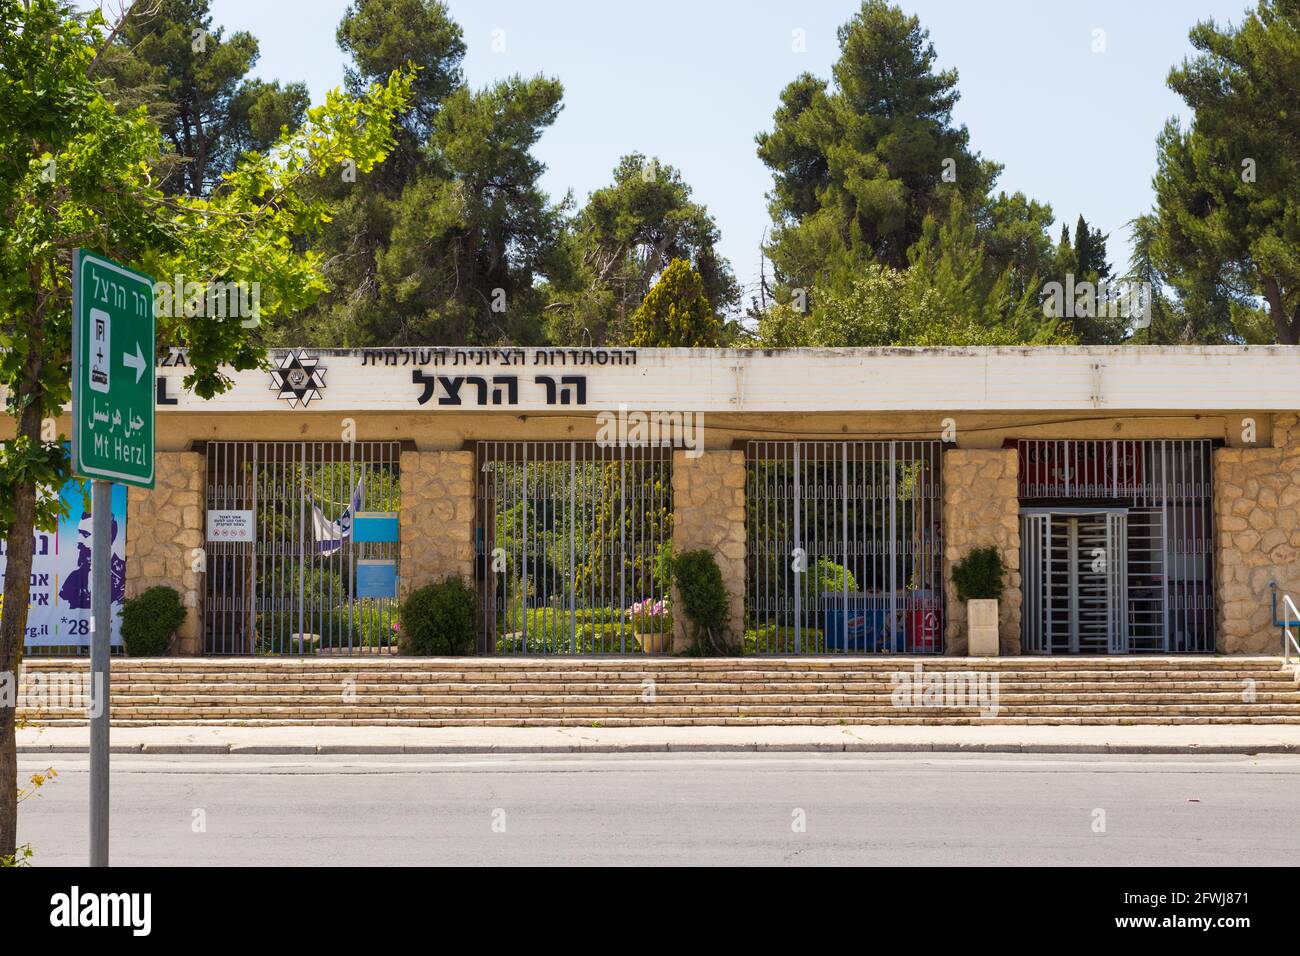 22-04-2020. jérusalem-israël. L'entrée du Parc National près du Cimetière militaire, sur le Mont Herzl à Jérusalem Israël, Banque D'Images